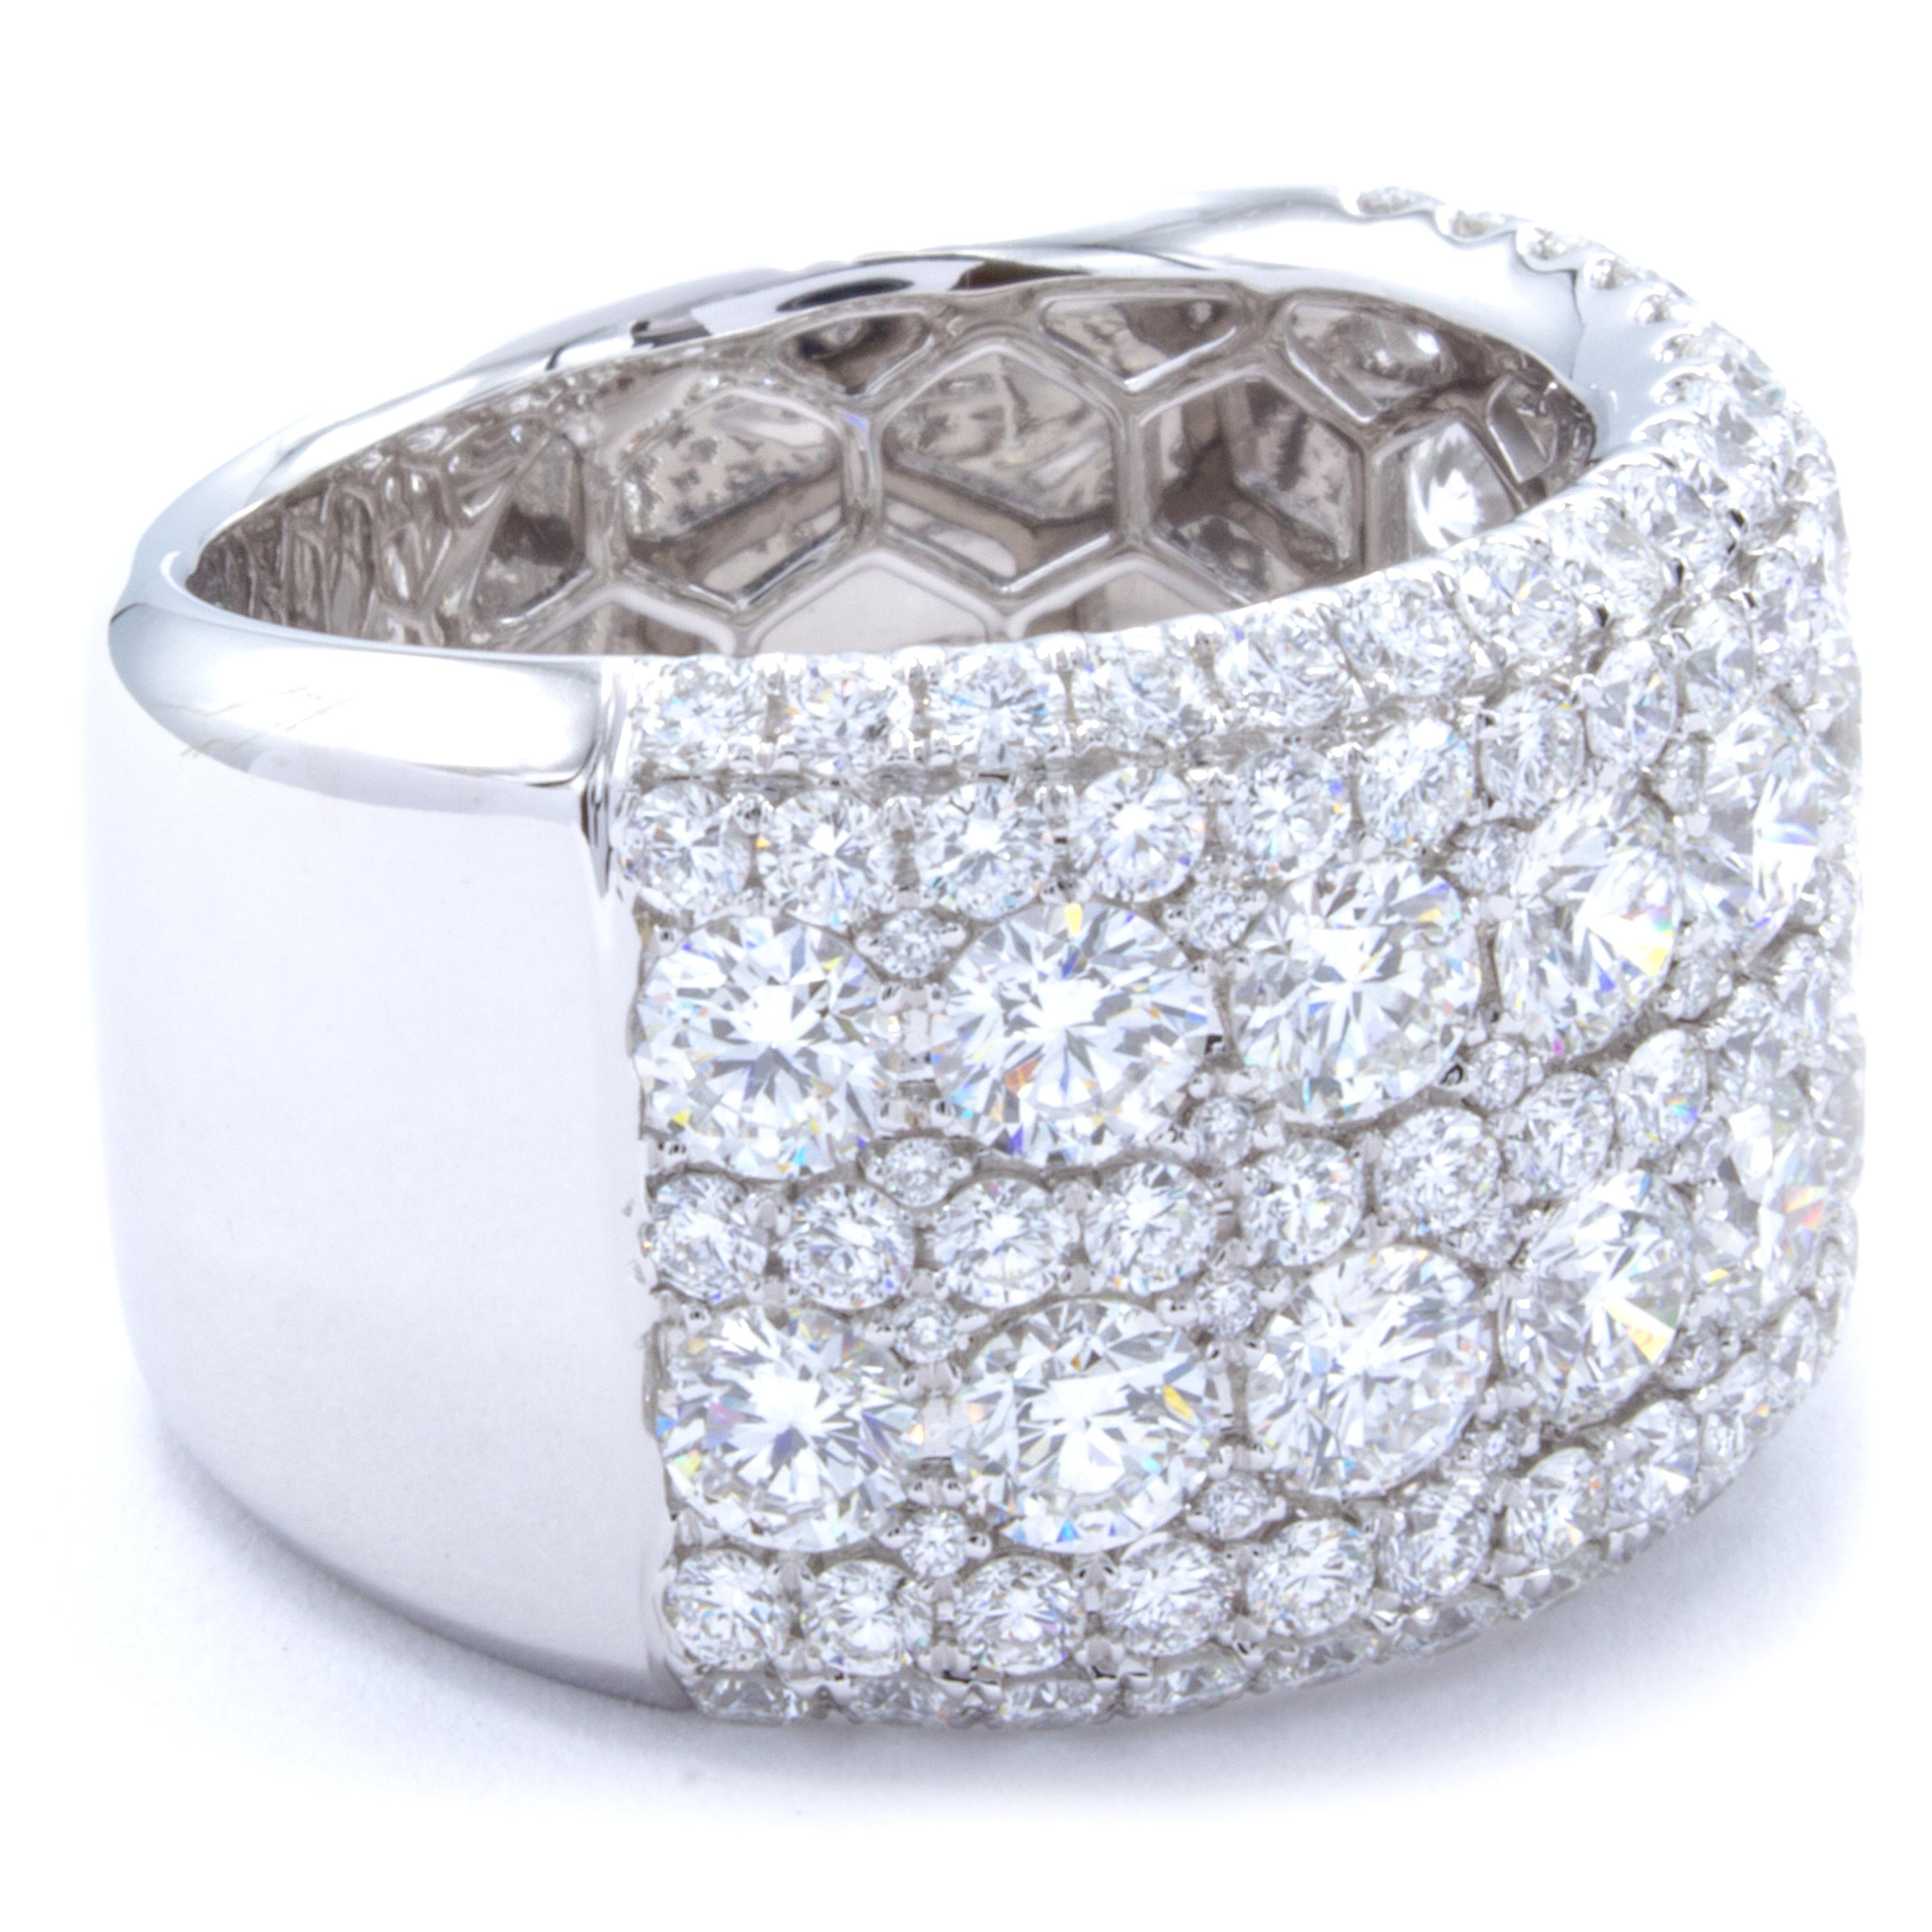 Women's David Rosenberg 4.27 Total Carat 18 Karat Gold Round Wide Band Diamond Ring